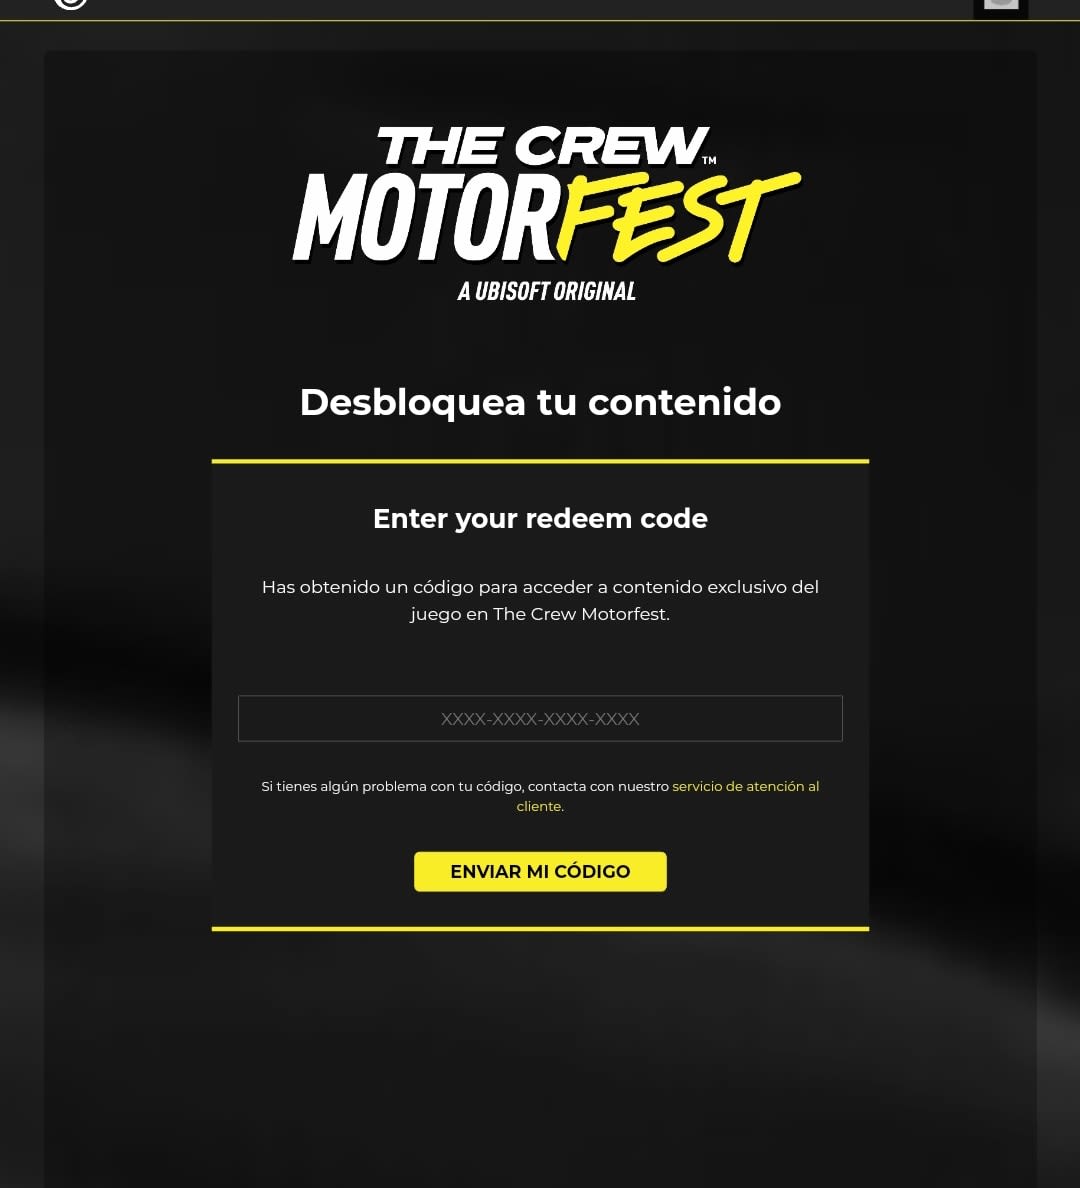 The Crew Motorfest - PS4 · UbiSoft · El Corte Inglés